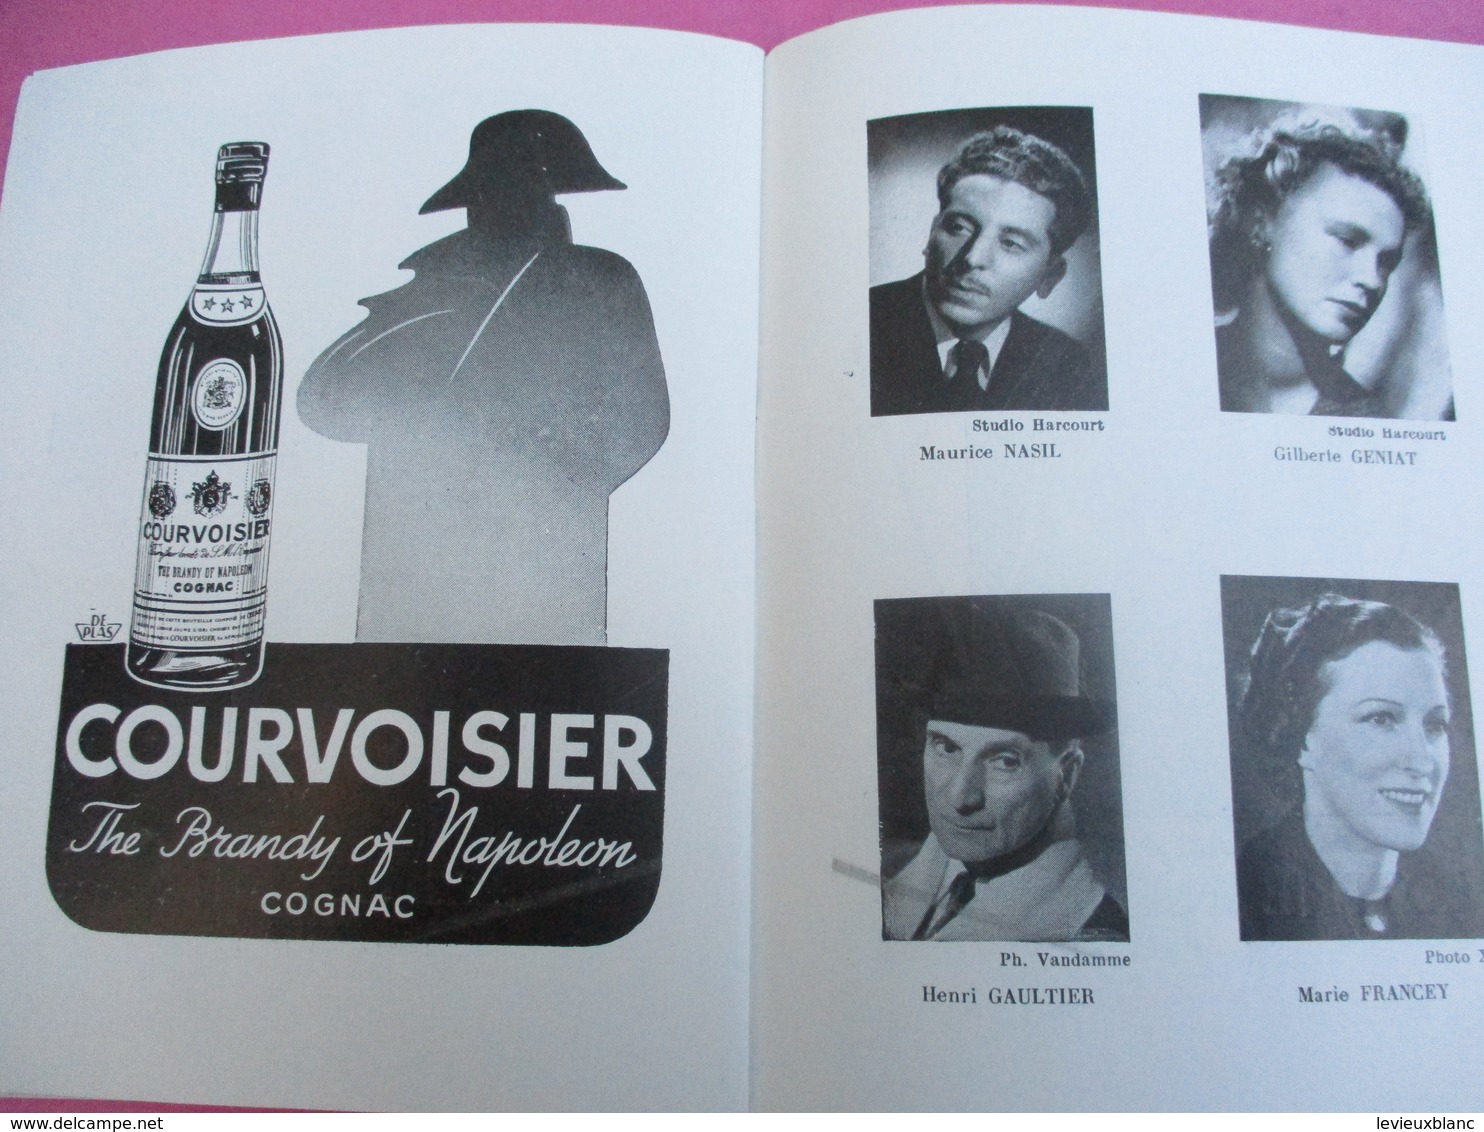 Théâtre MONTPARNASSE Gaston BATY/ Le Voyageur sans Bagage/Anouilh/ Michel VITOLD/ Saison 1950-1951   PROG175